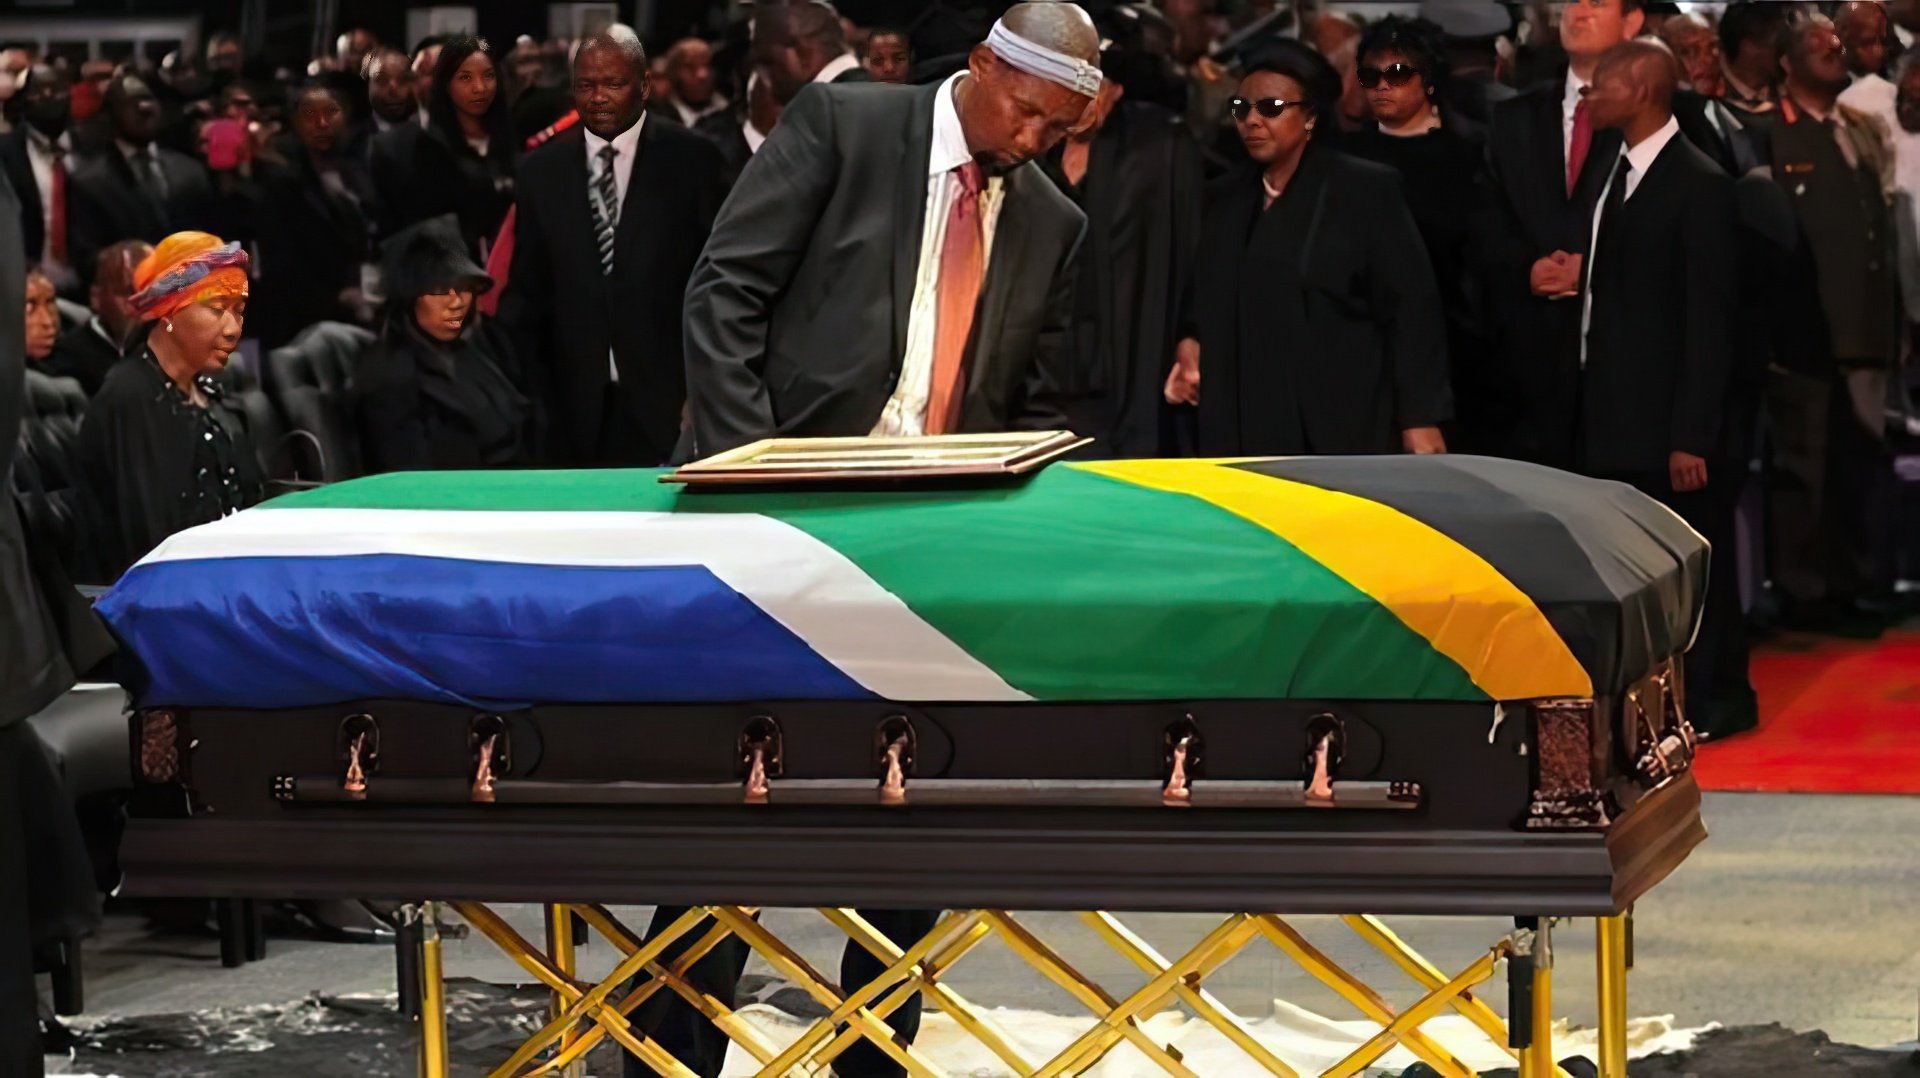 Nelson Mandela’s funeral